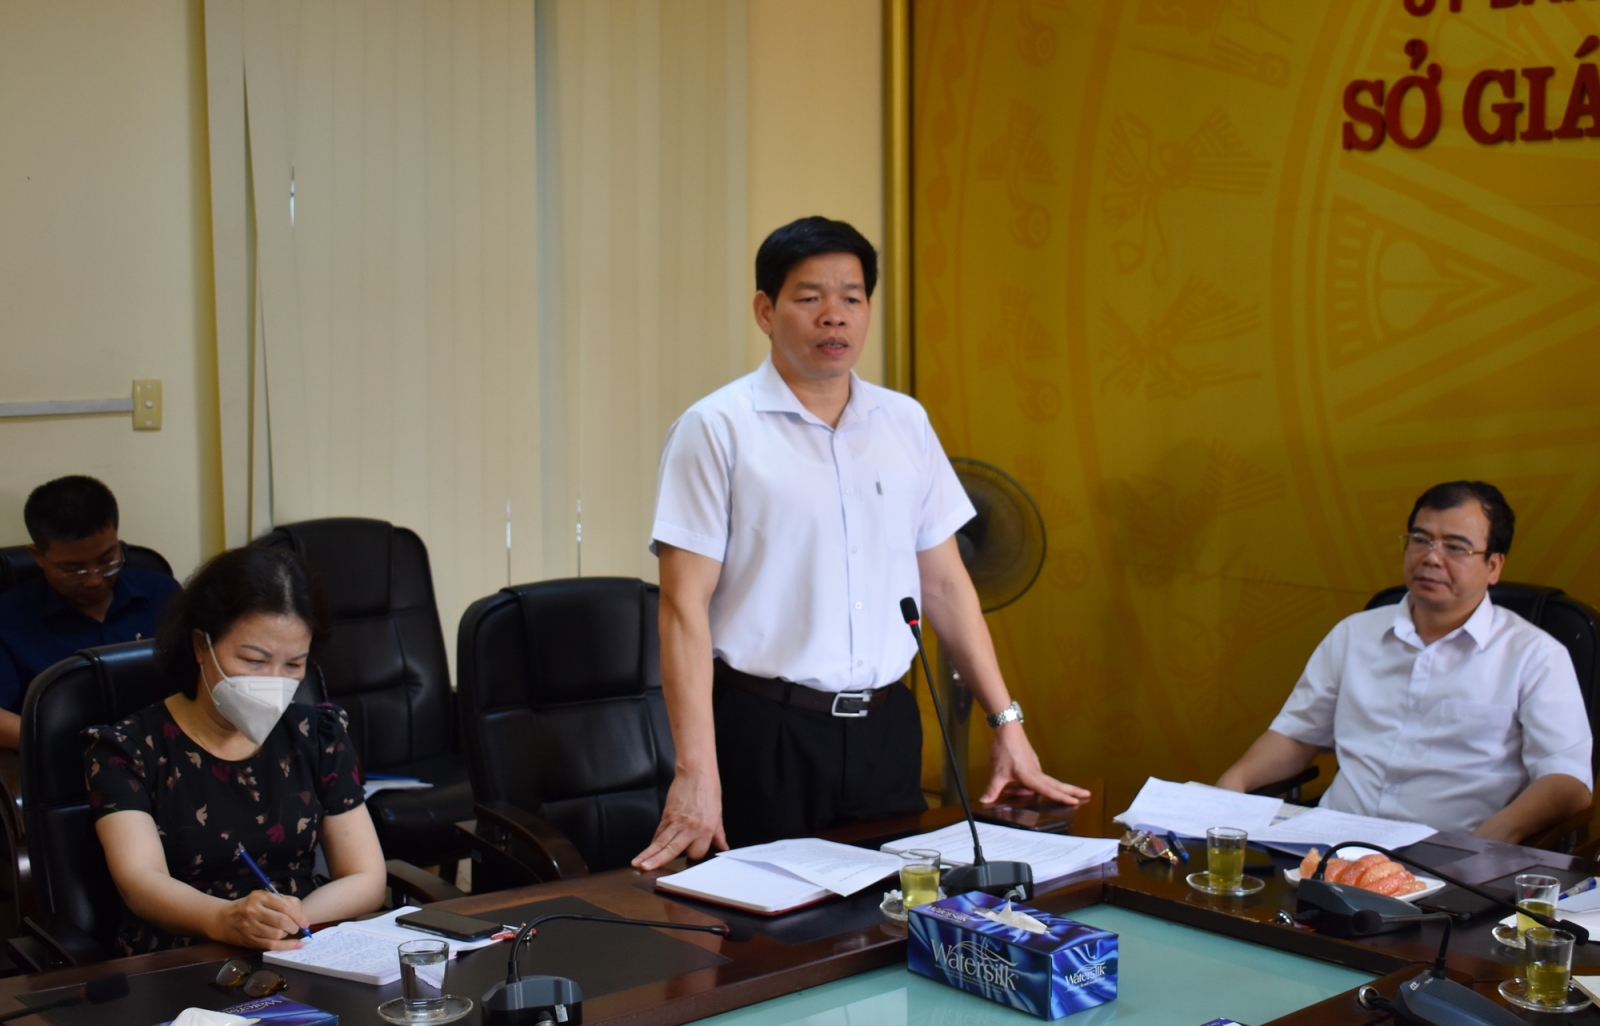 Thứ trưởng Nguyễn Hữu Độ: Thí sinh đến trường thi cần phải an toàn để xã hội yên tâm - Ảnh minh hoạ 3